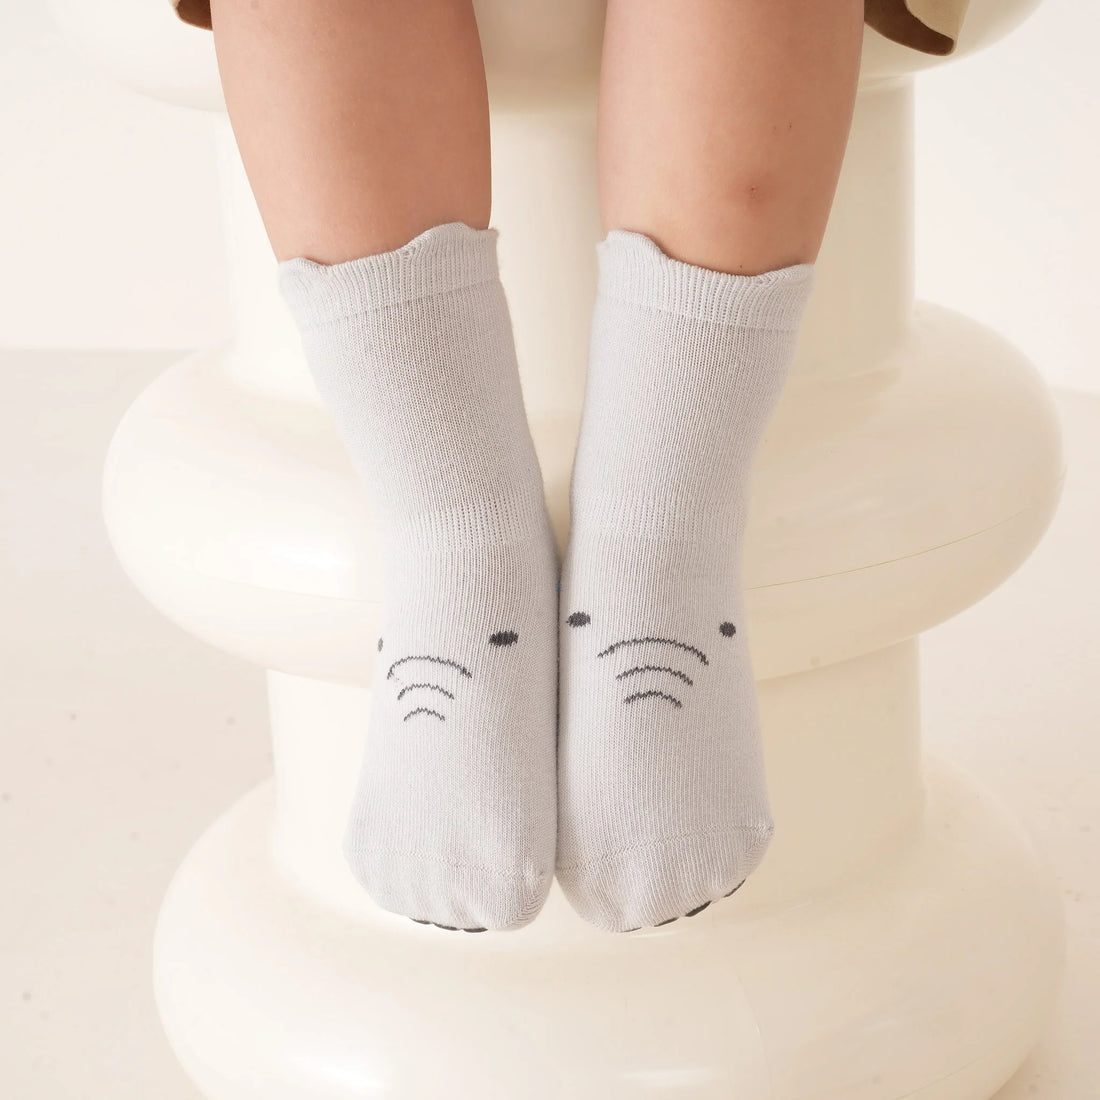 Are waterproof socks machine washable?